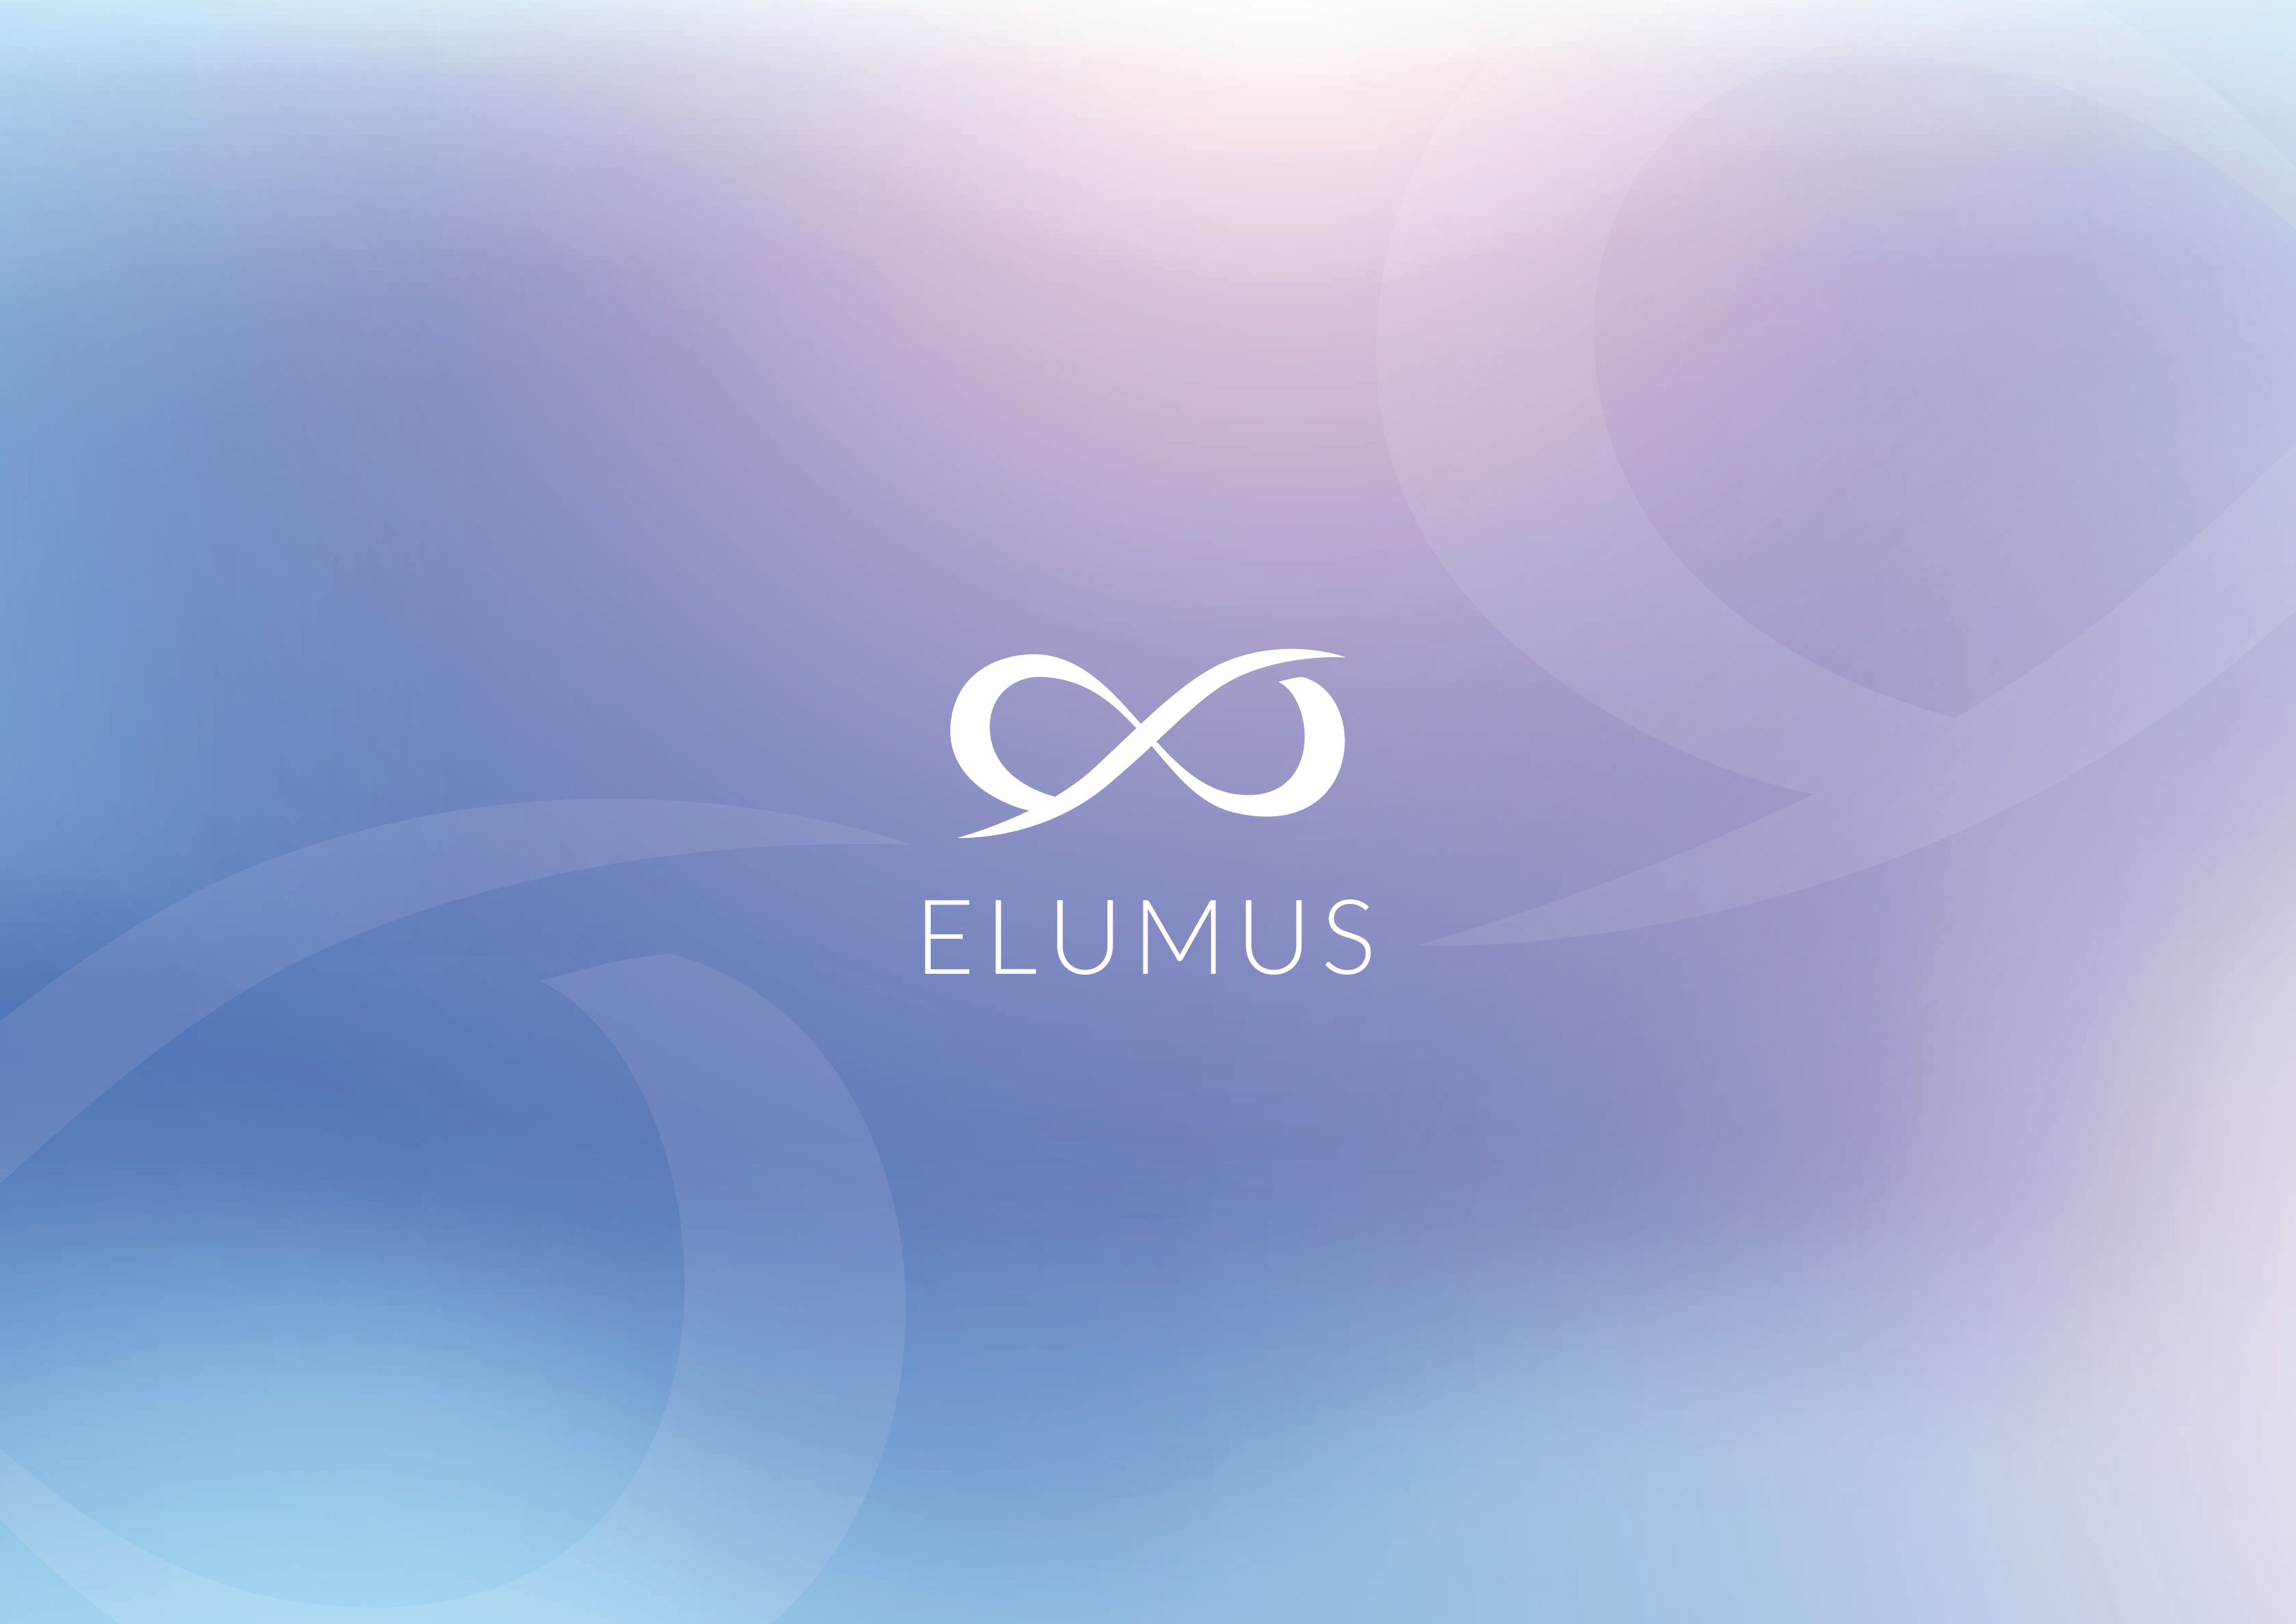 Elumus - image